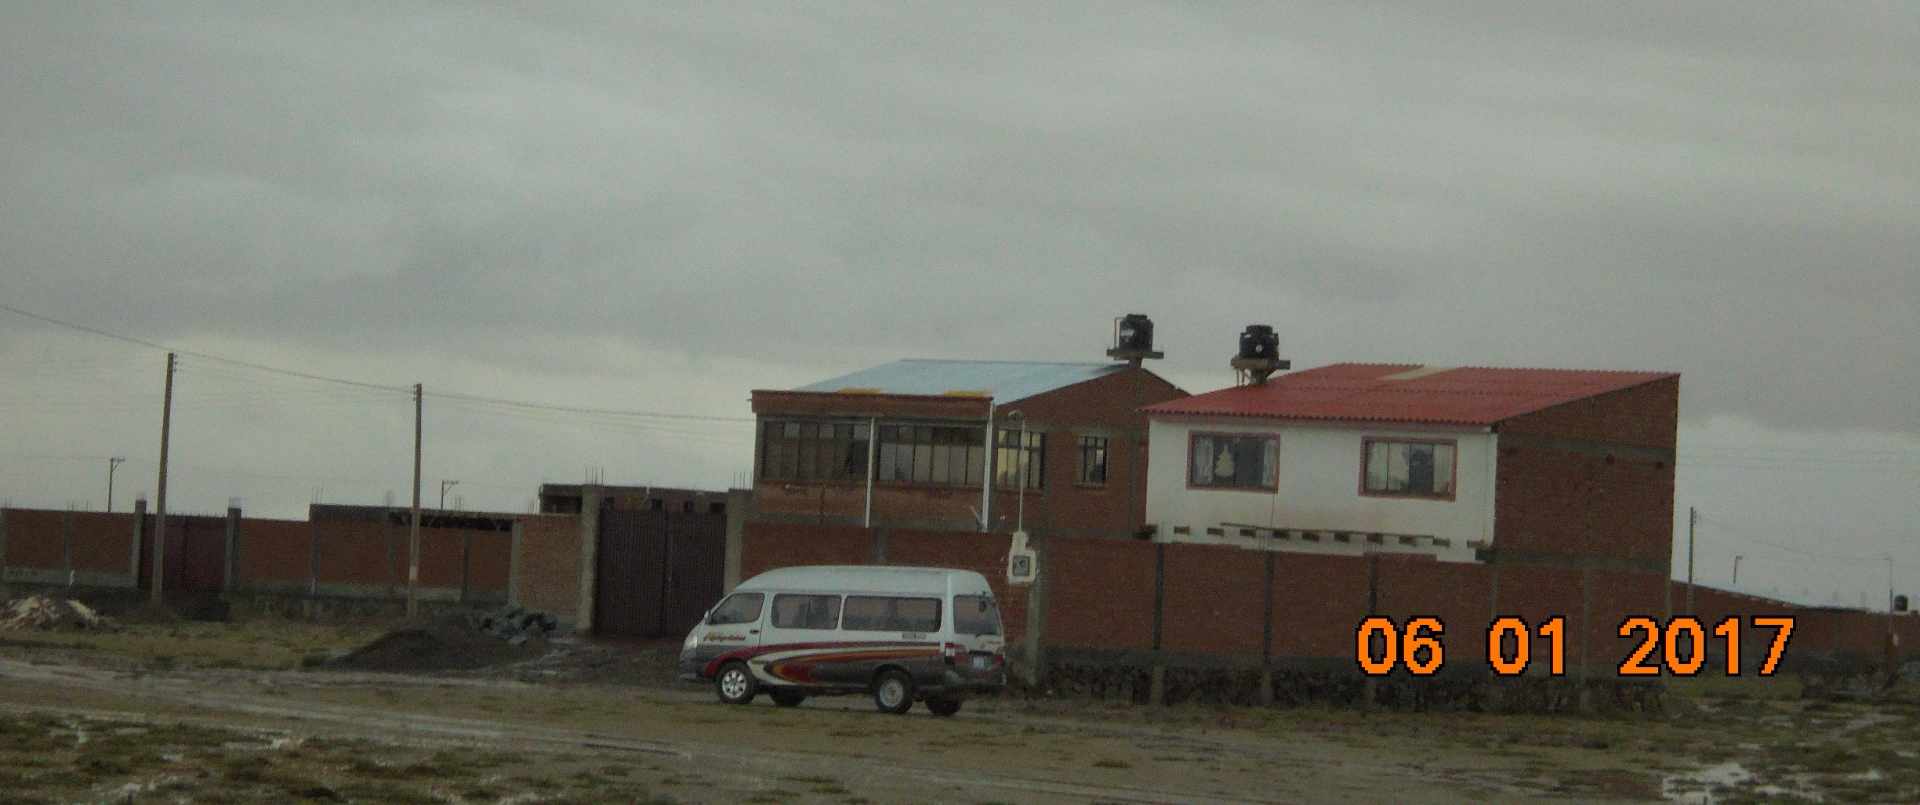 Casa en VentaUrb. Nuevo Amanecer doble vía La Paz Oruro Foto 1